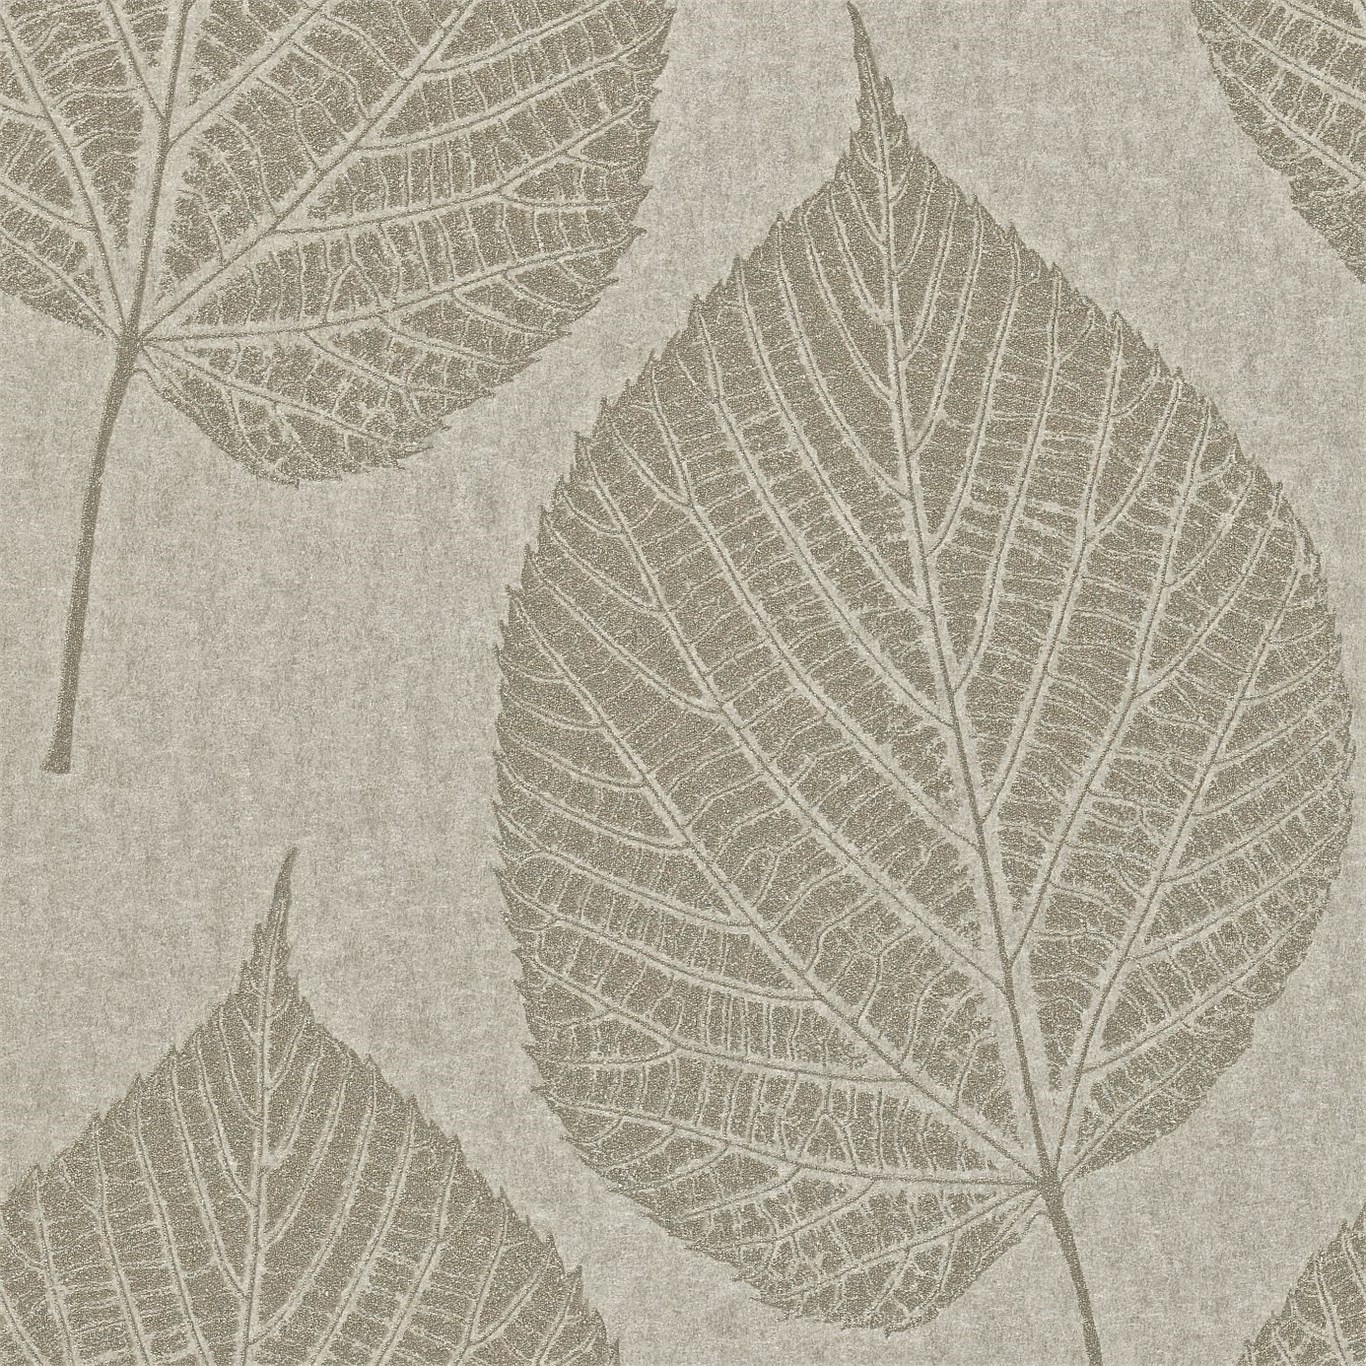 Harlequin Leaf Wallpaper - Harlequin Momentum Ii 110376 Leaf , HD Wallpaper & Backgrounds